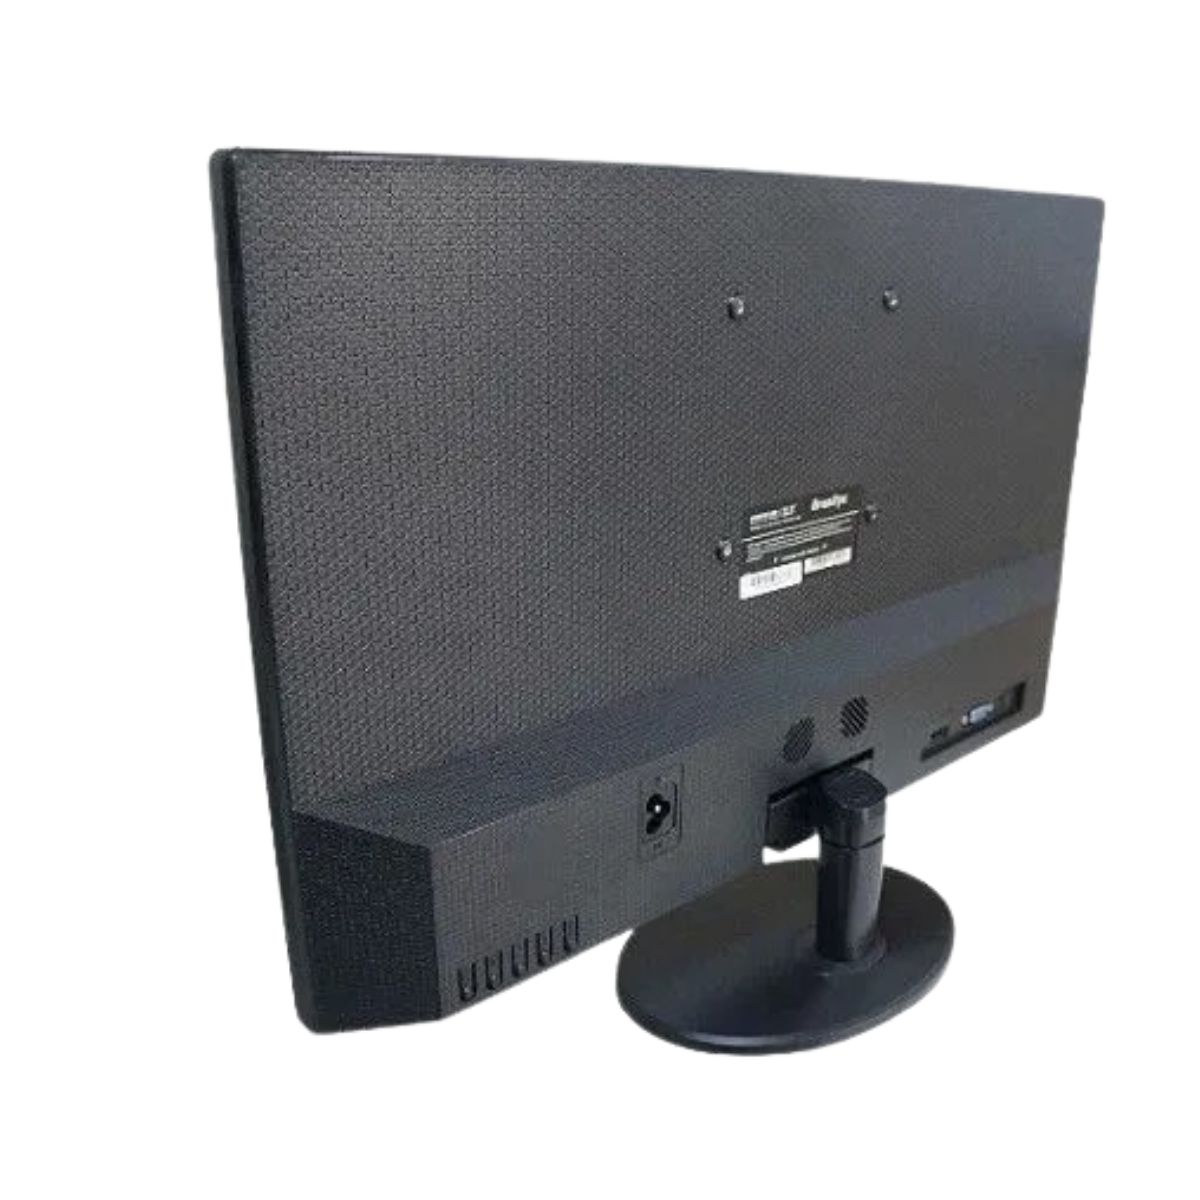 Monitor Led 21.5 Brazilpc 22wr-75 Fhd 75hz Preto Widescreen Box - Districomp Distribuidora